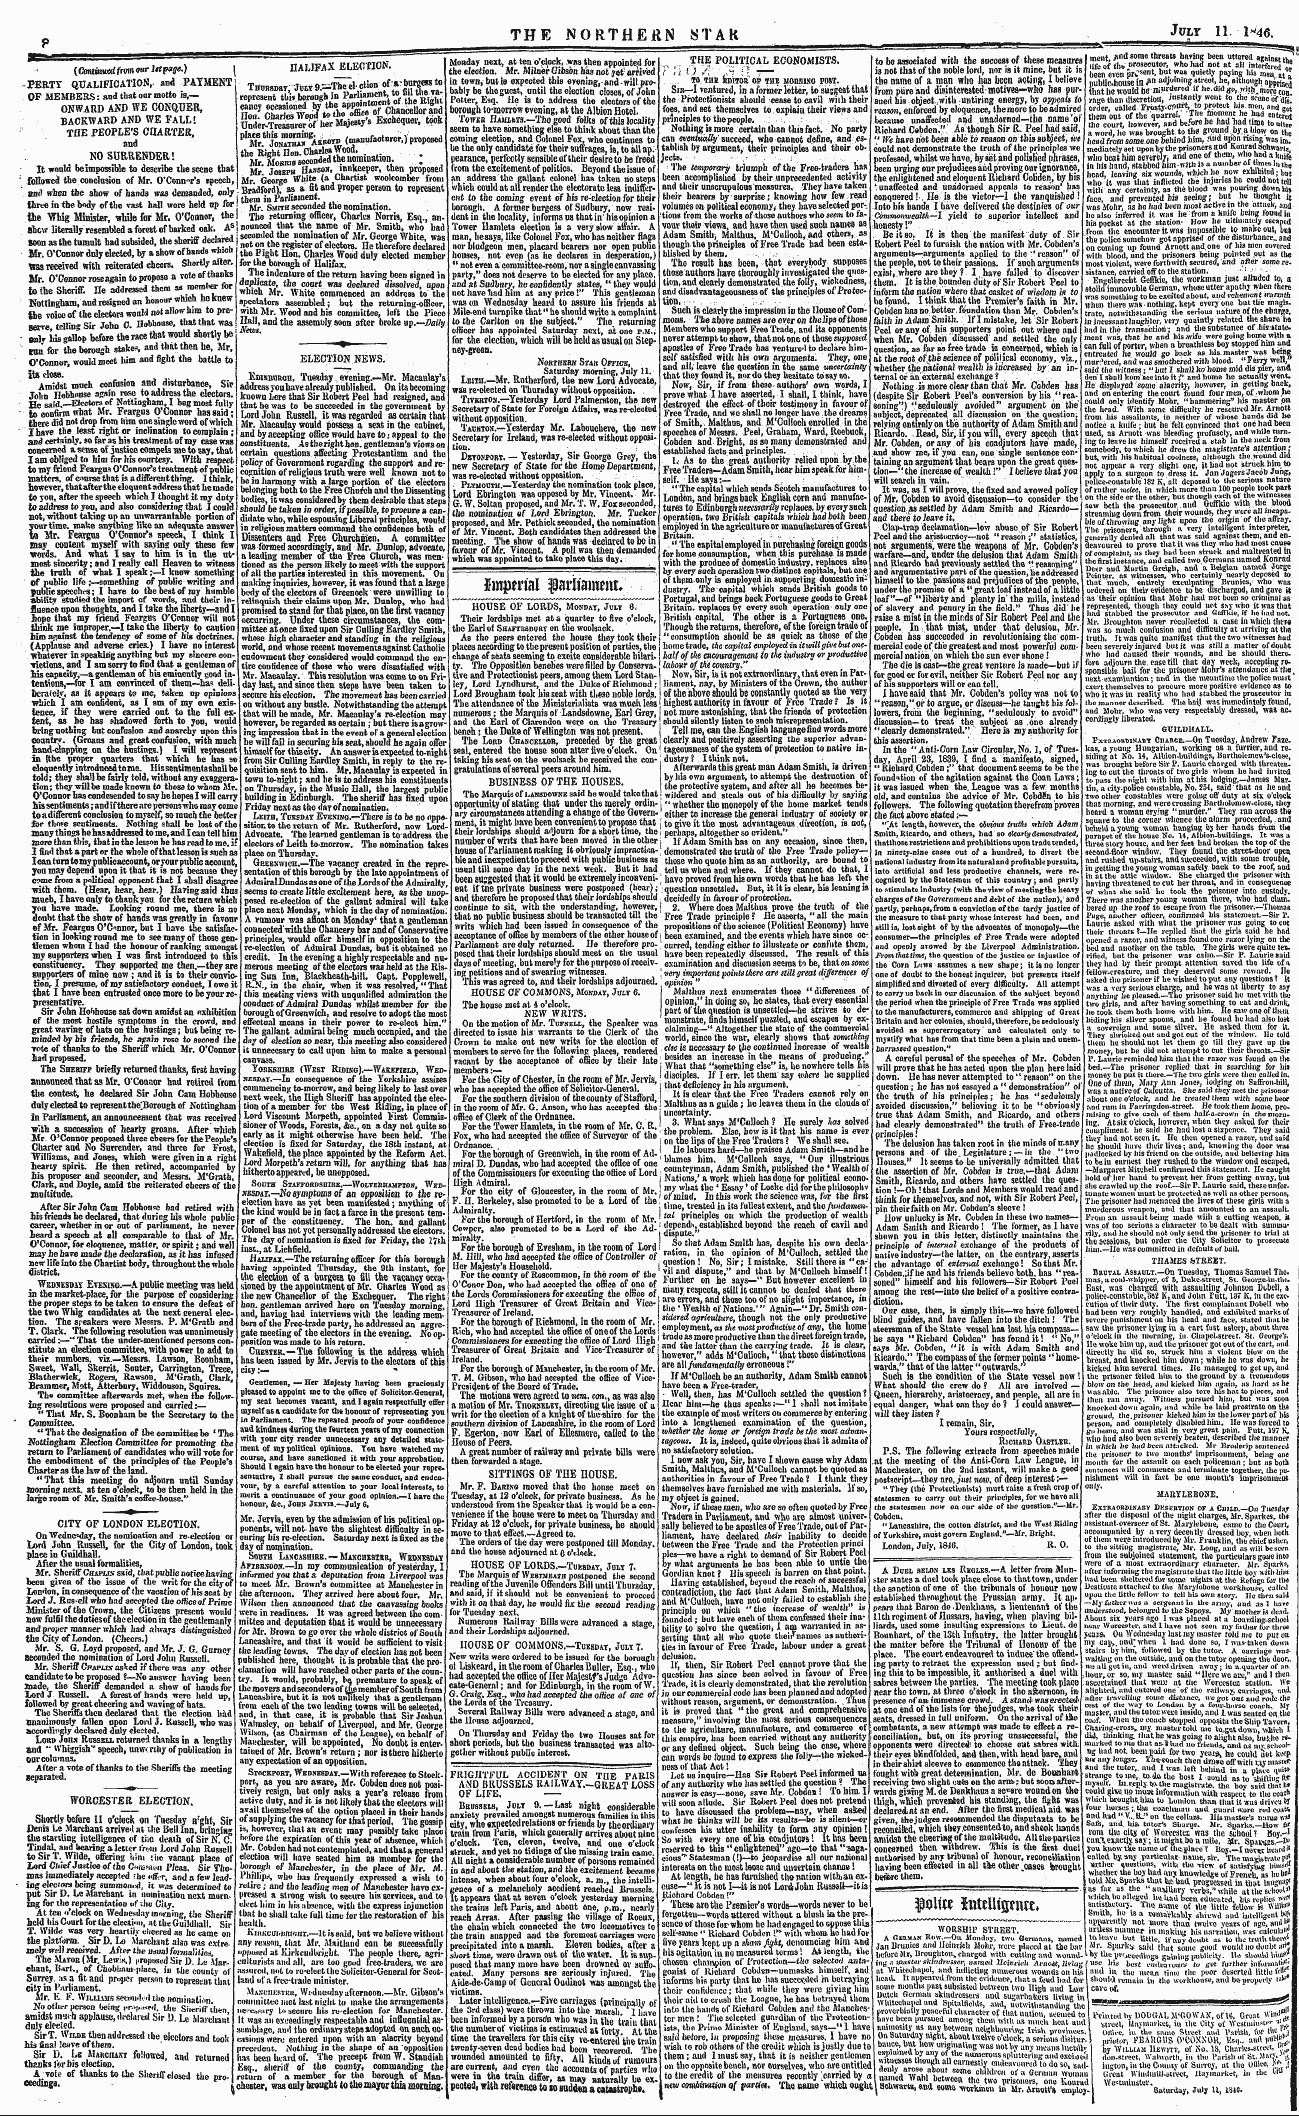 Northern Star (1837-1852): jS F Y, 3rd edition - $ Mm Totwubrntfc